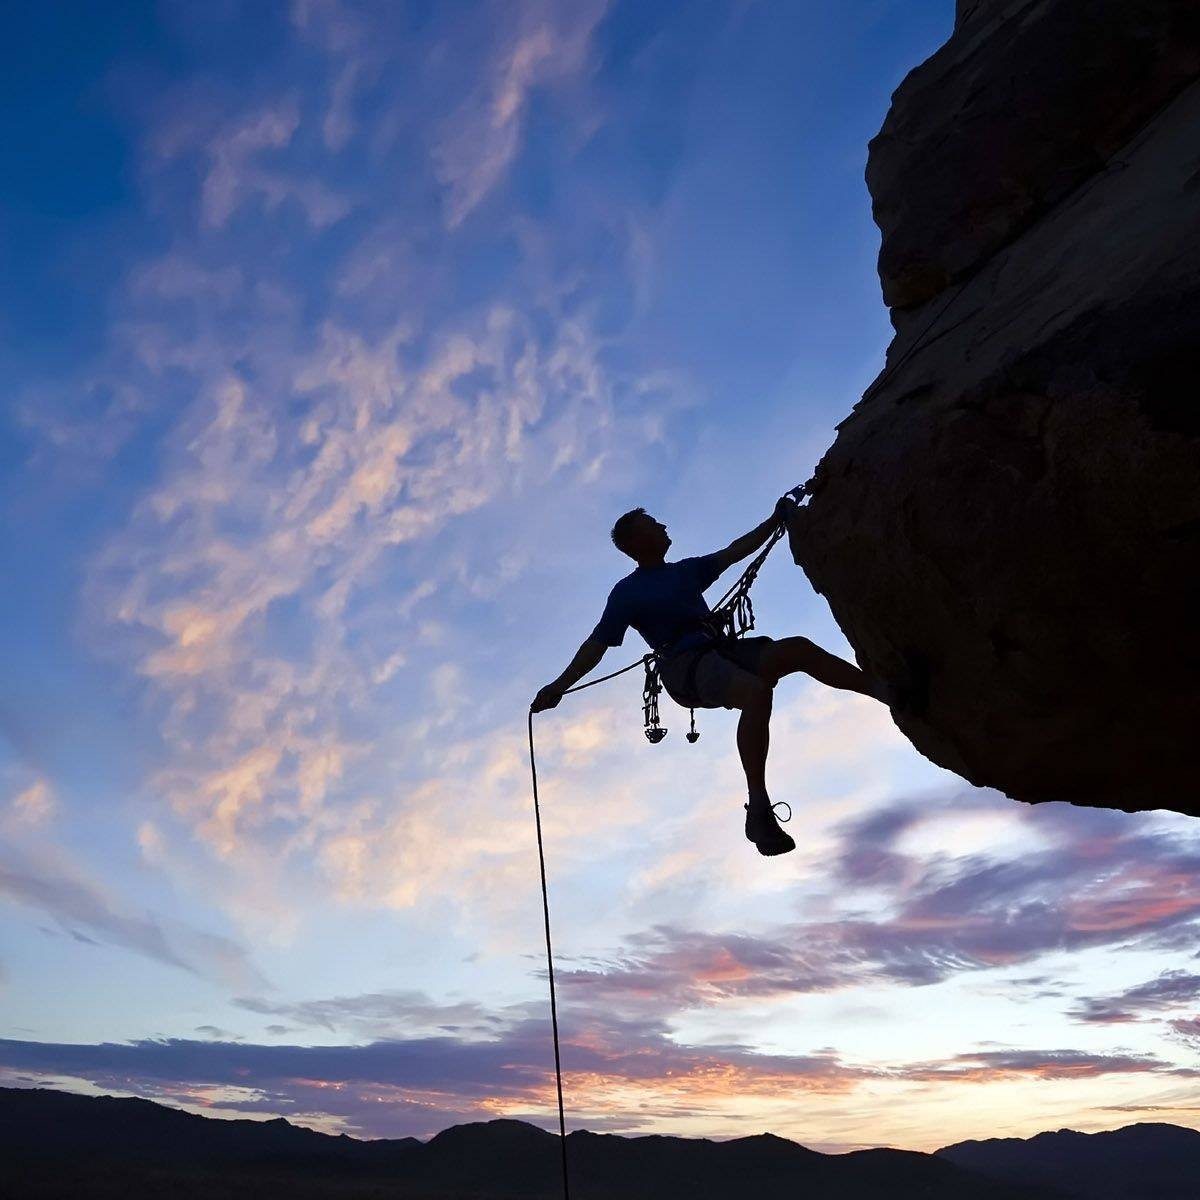 攀岩运动有岩壁芭蕾,峭壁上的艺术体操等美称,由登山运动衍生而来